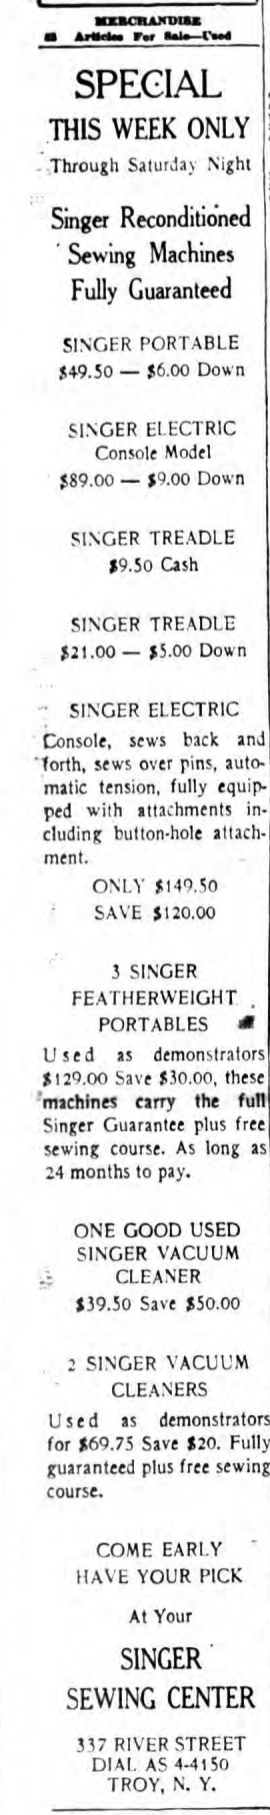 Singer sewing vintage ads